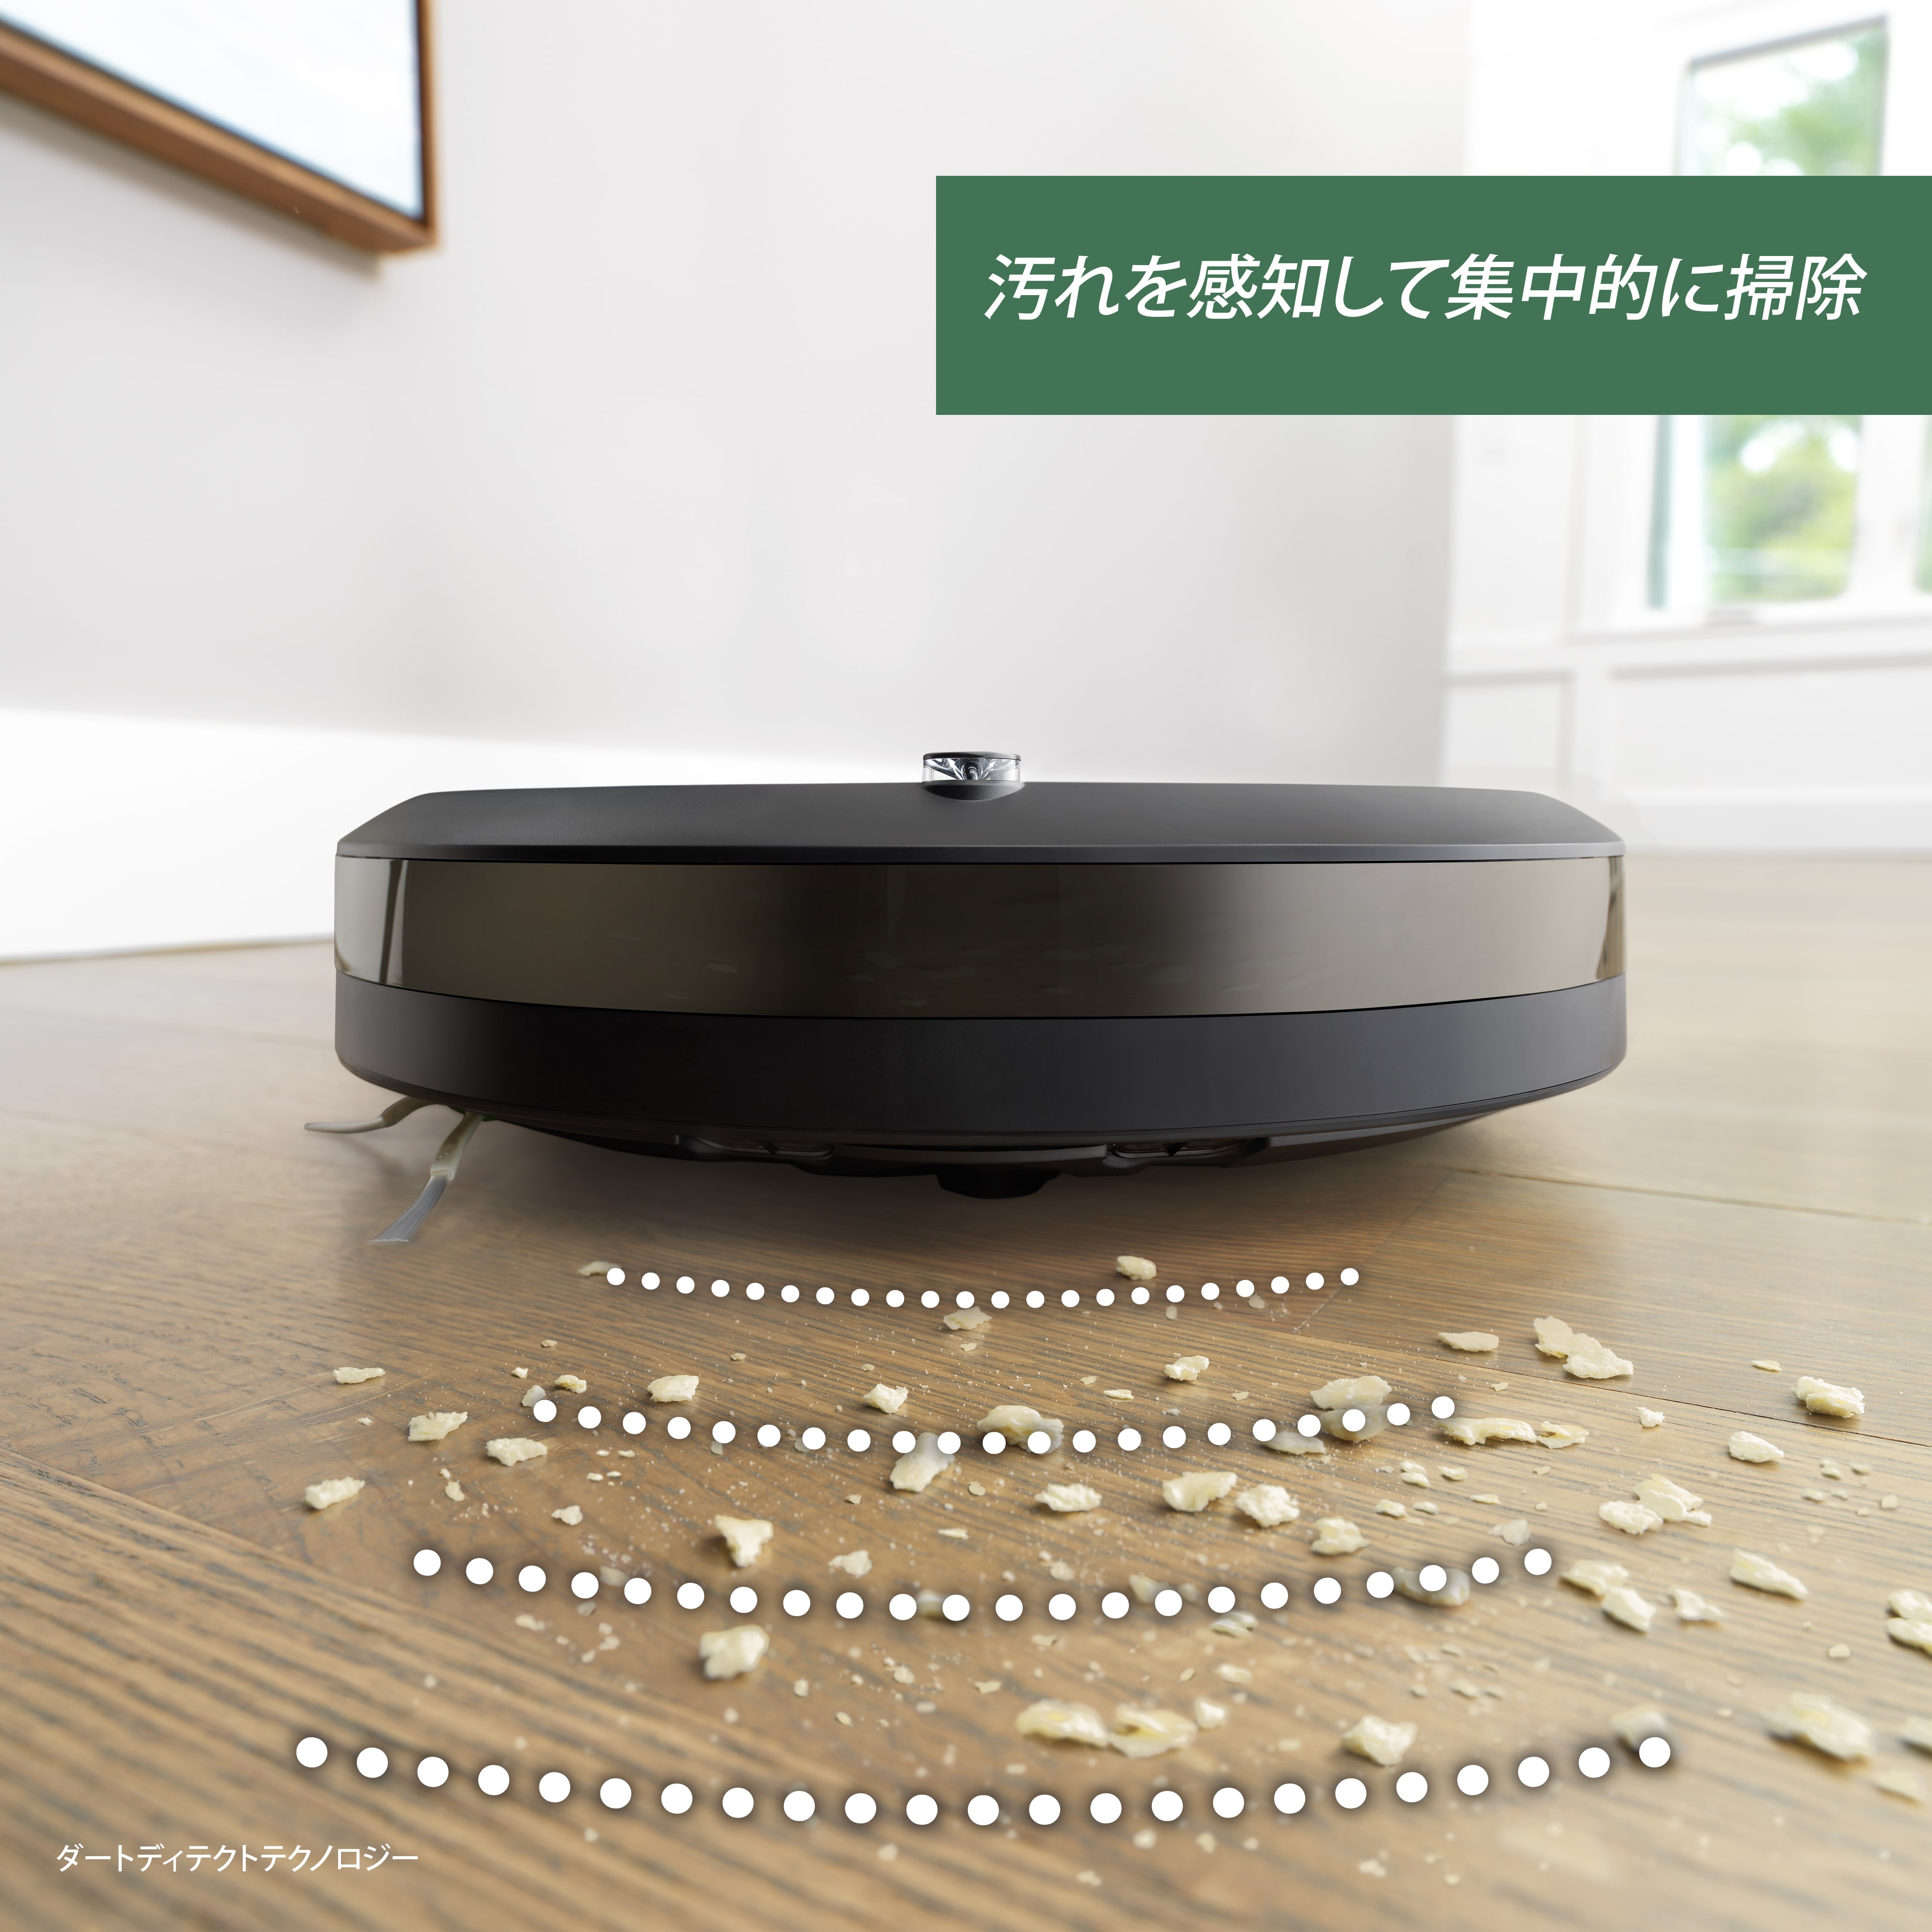 SALE／58%OFF】 Boom Japan shopルンバ i2 ロボット掃除機 アイロボット 水洗いできるダストボックス wifi対応  マッピング 自動充電 運転再開 吸引力 カーペット 畳